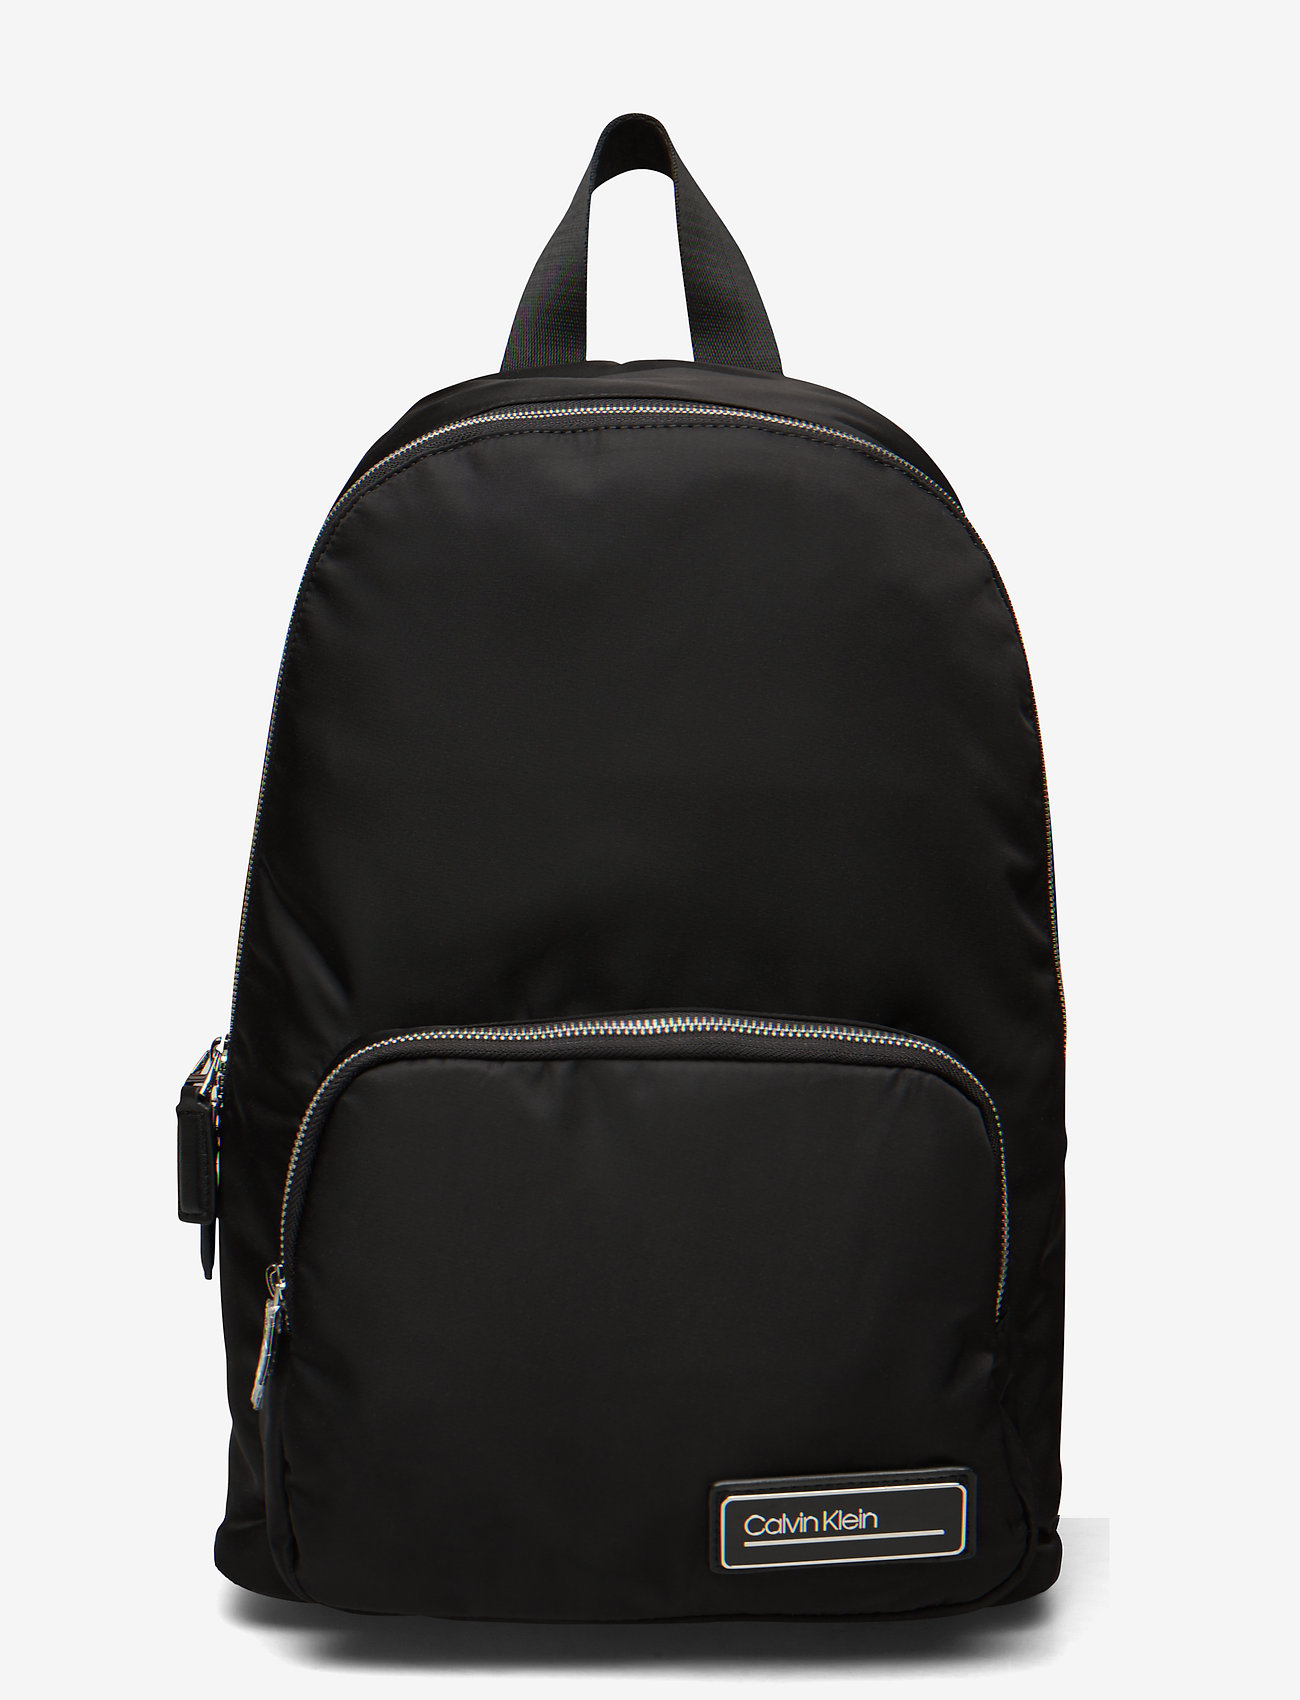 ck backpack